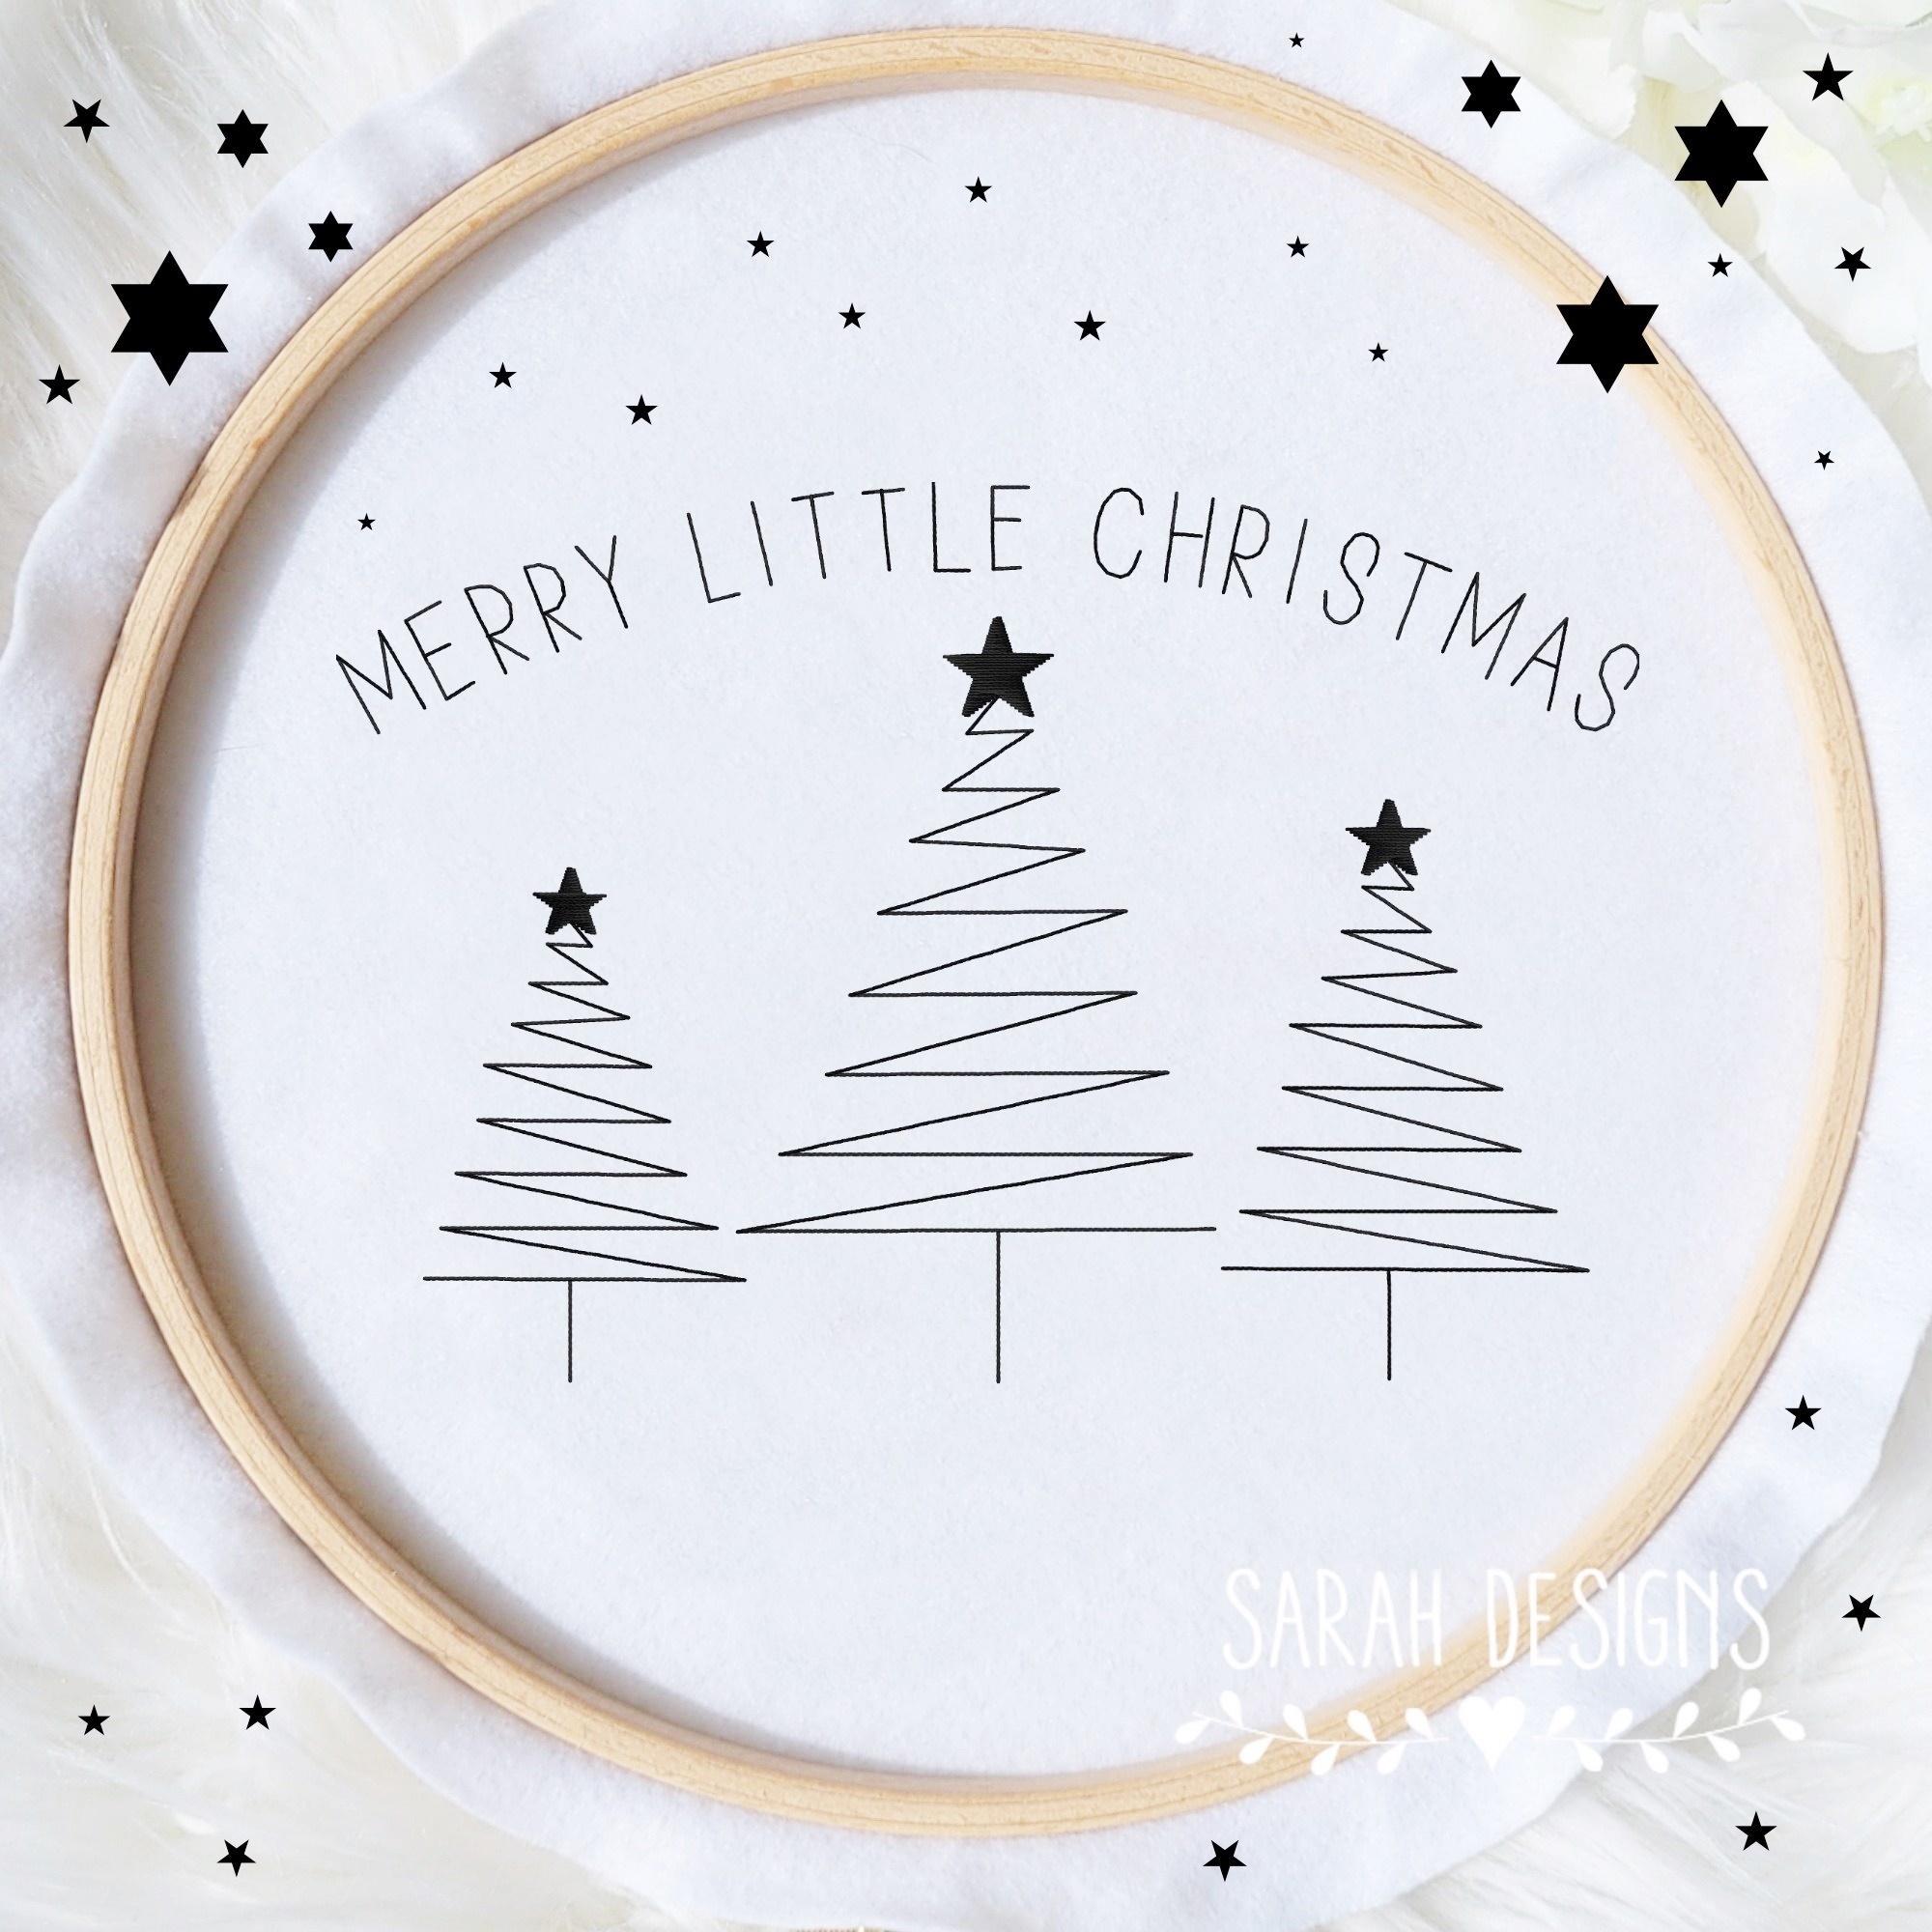 Stickdatei Merry little Christmas mit Tannebäumen im Doodle Stil Weihnachten 2